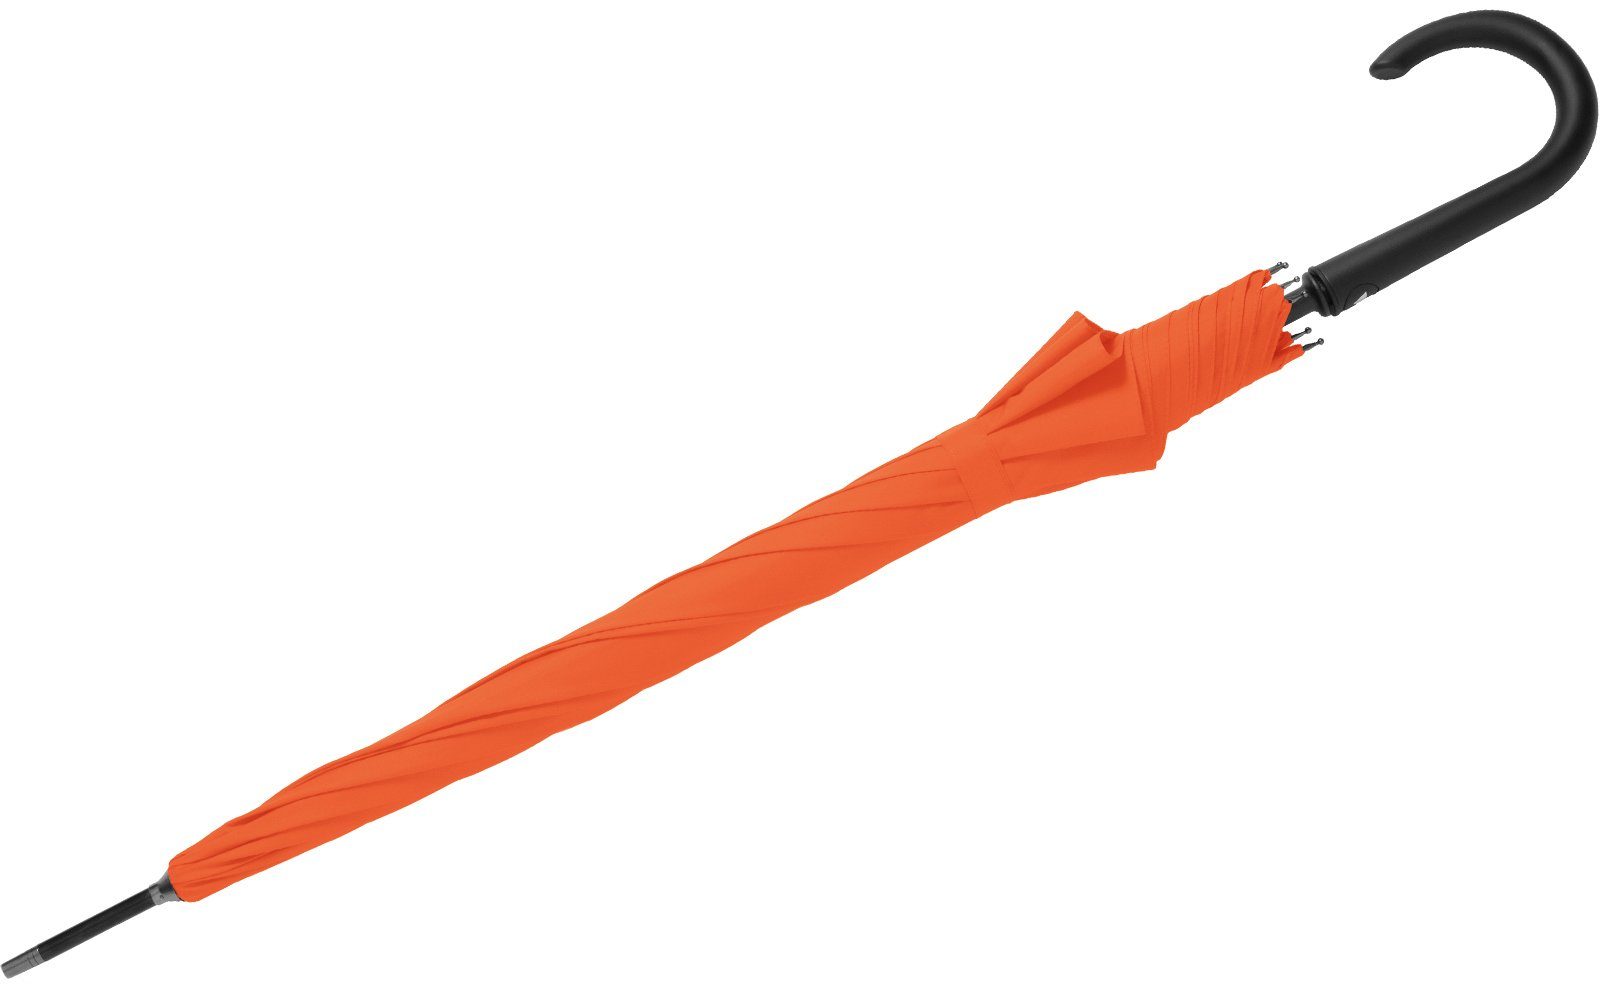 mit RS-Versand stabiler Auslöseknopf integrierter Langregenschirm Auf-Automatik, Stahl-Fiberglas-Gestell, Regenschirm orange großer